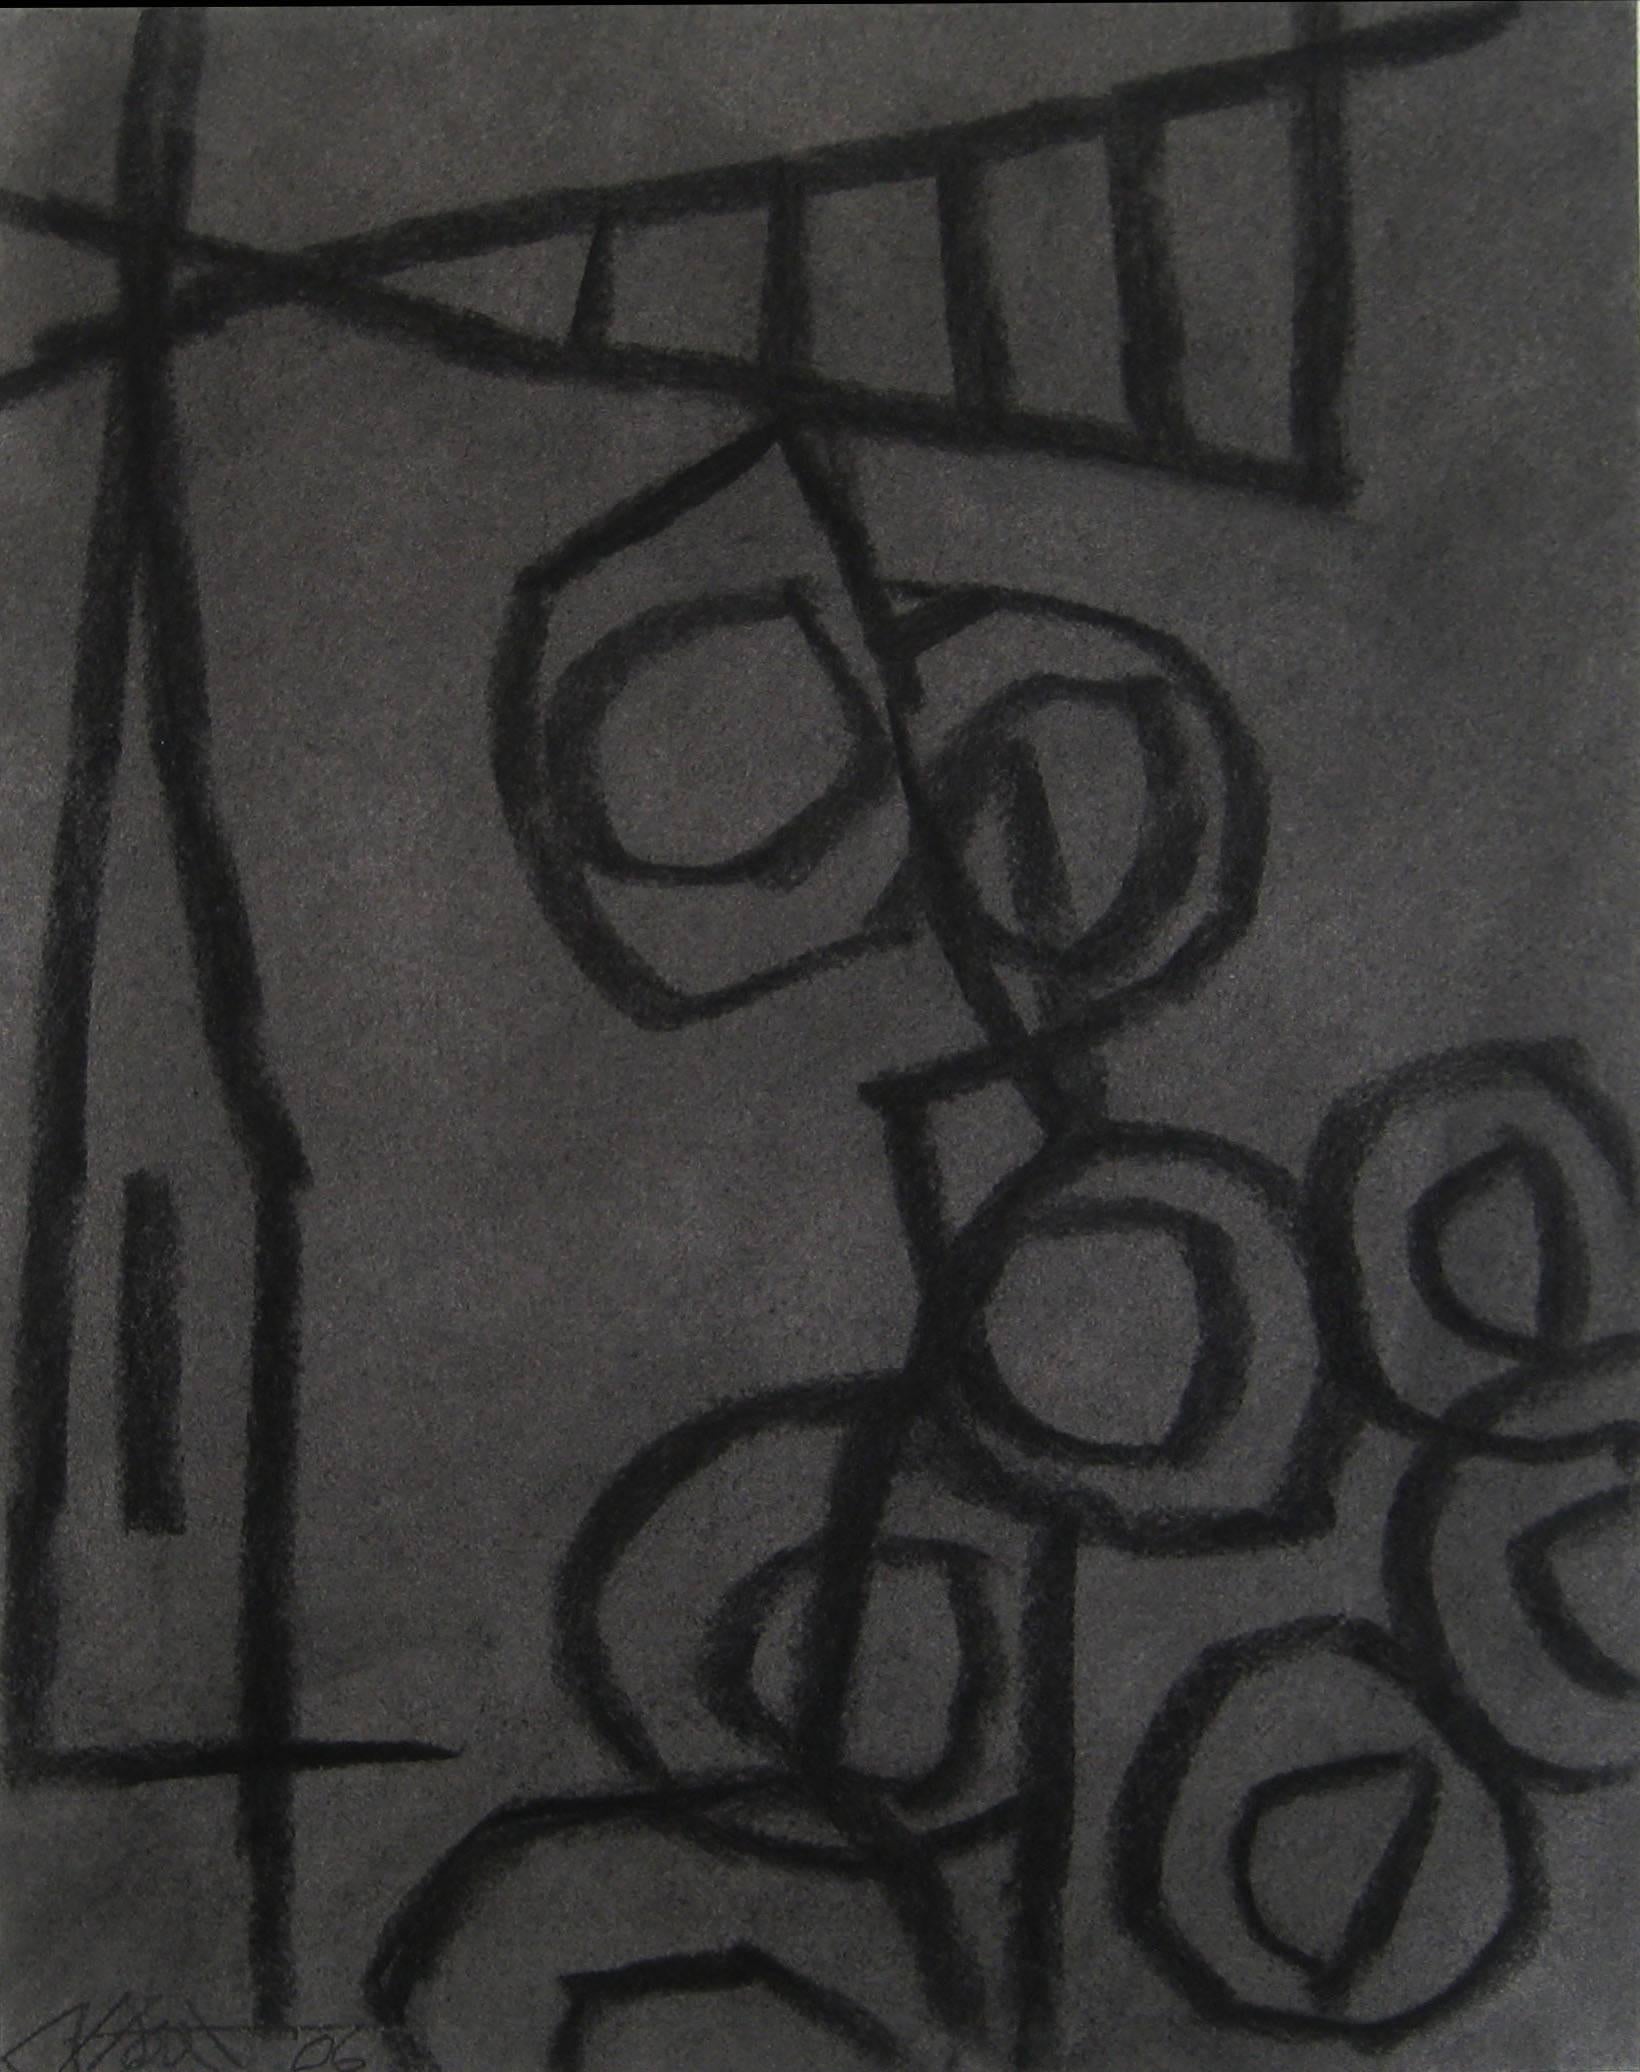 Abstract Painting Ralph Stout - Nature morte abstraite moderne noire anthracite et grise sans titre sur papier, 24